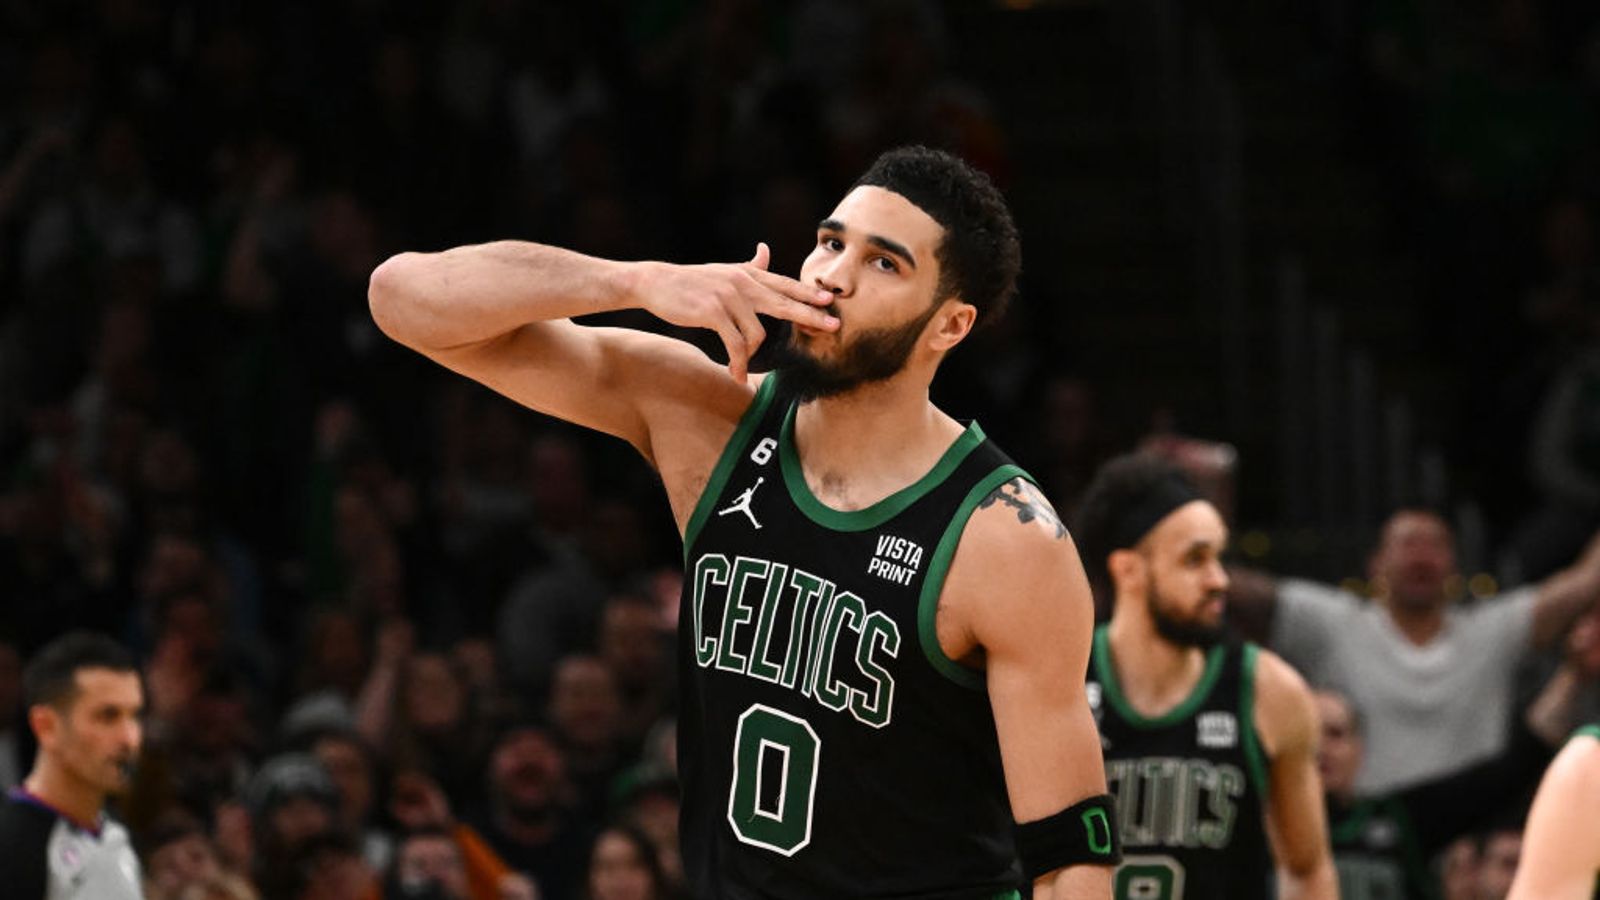 BSJ Game Report: Celtics 127, Hornets 116 - Hot start, cold finish 